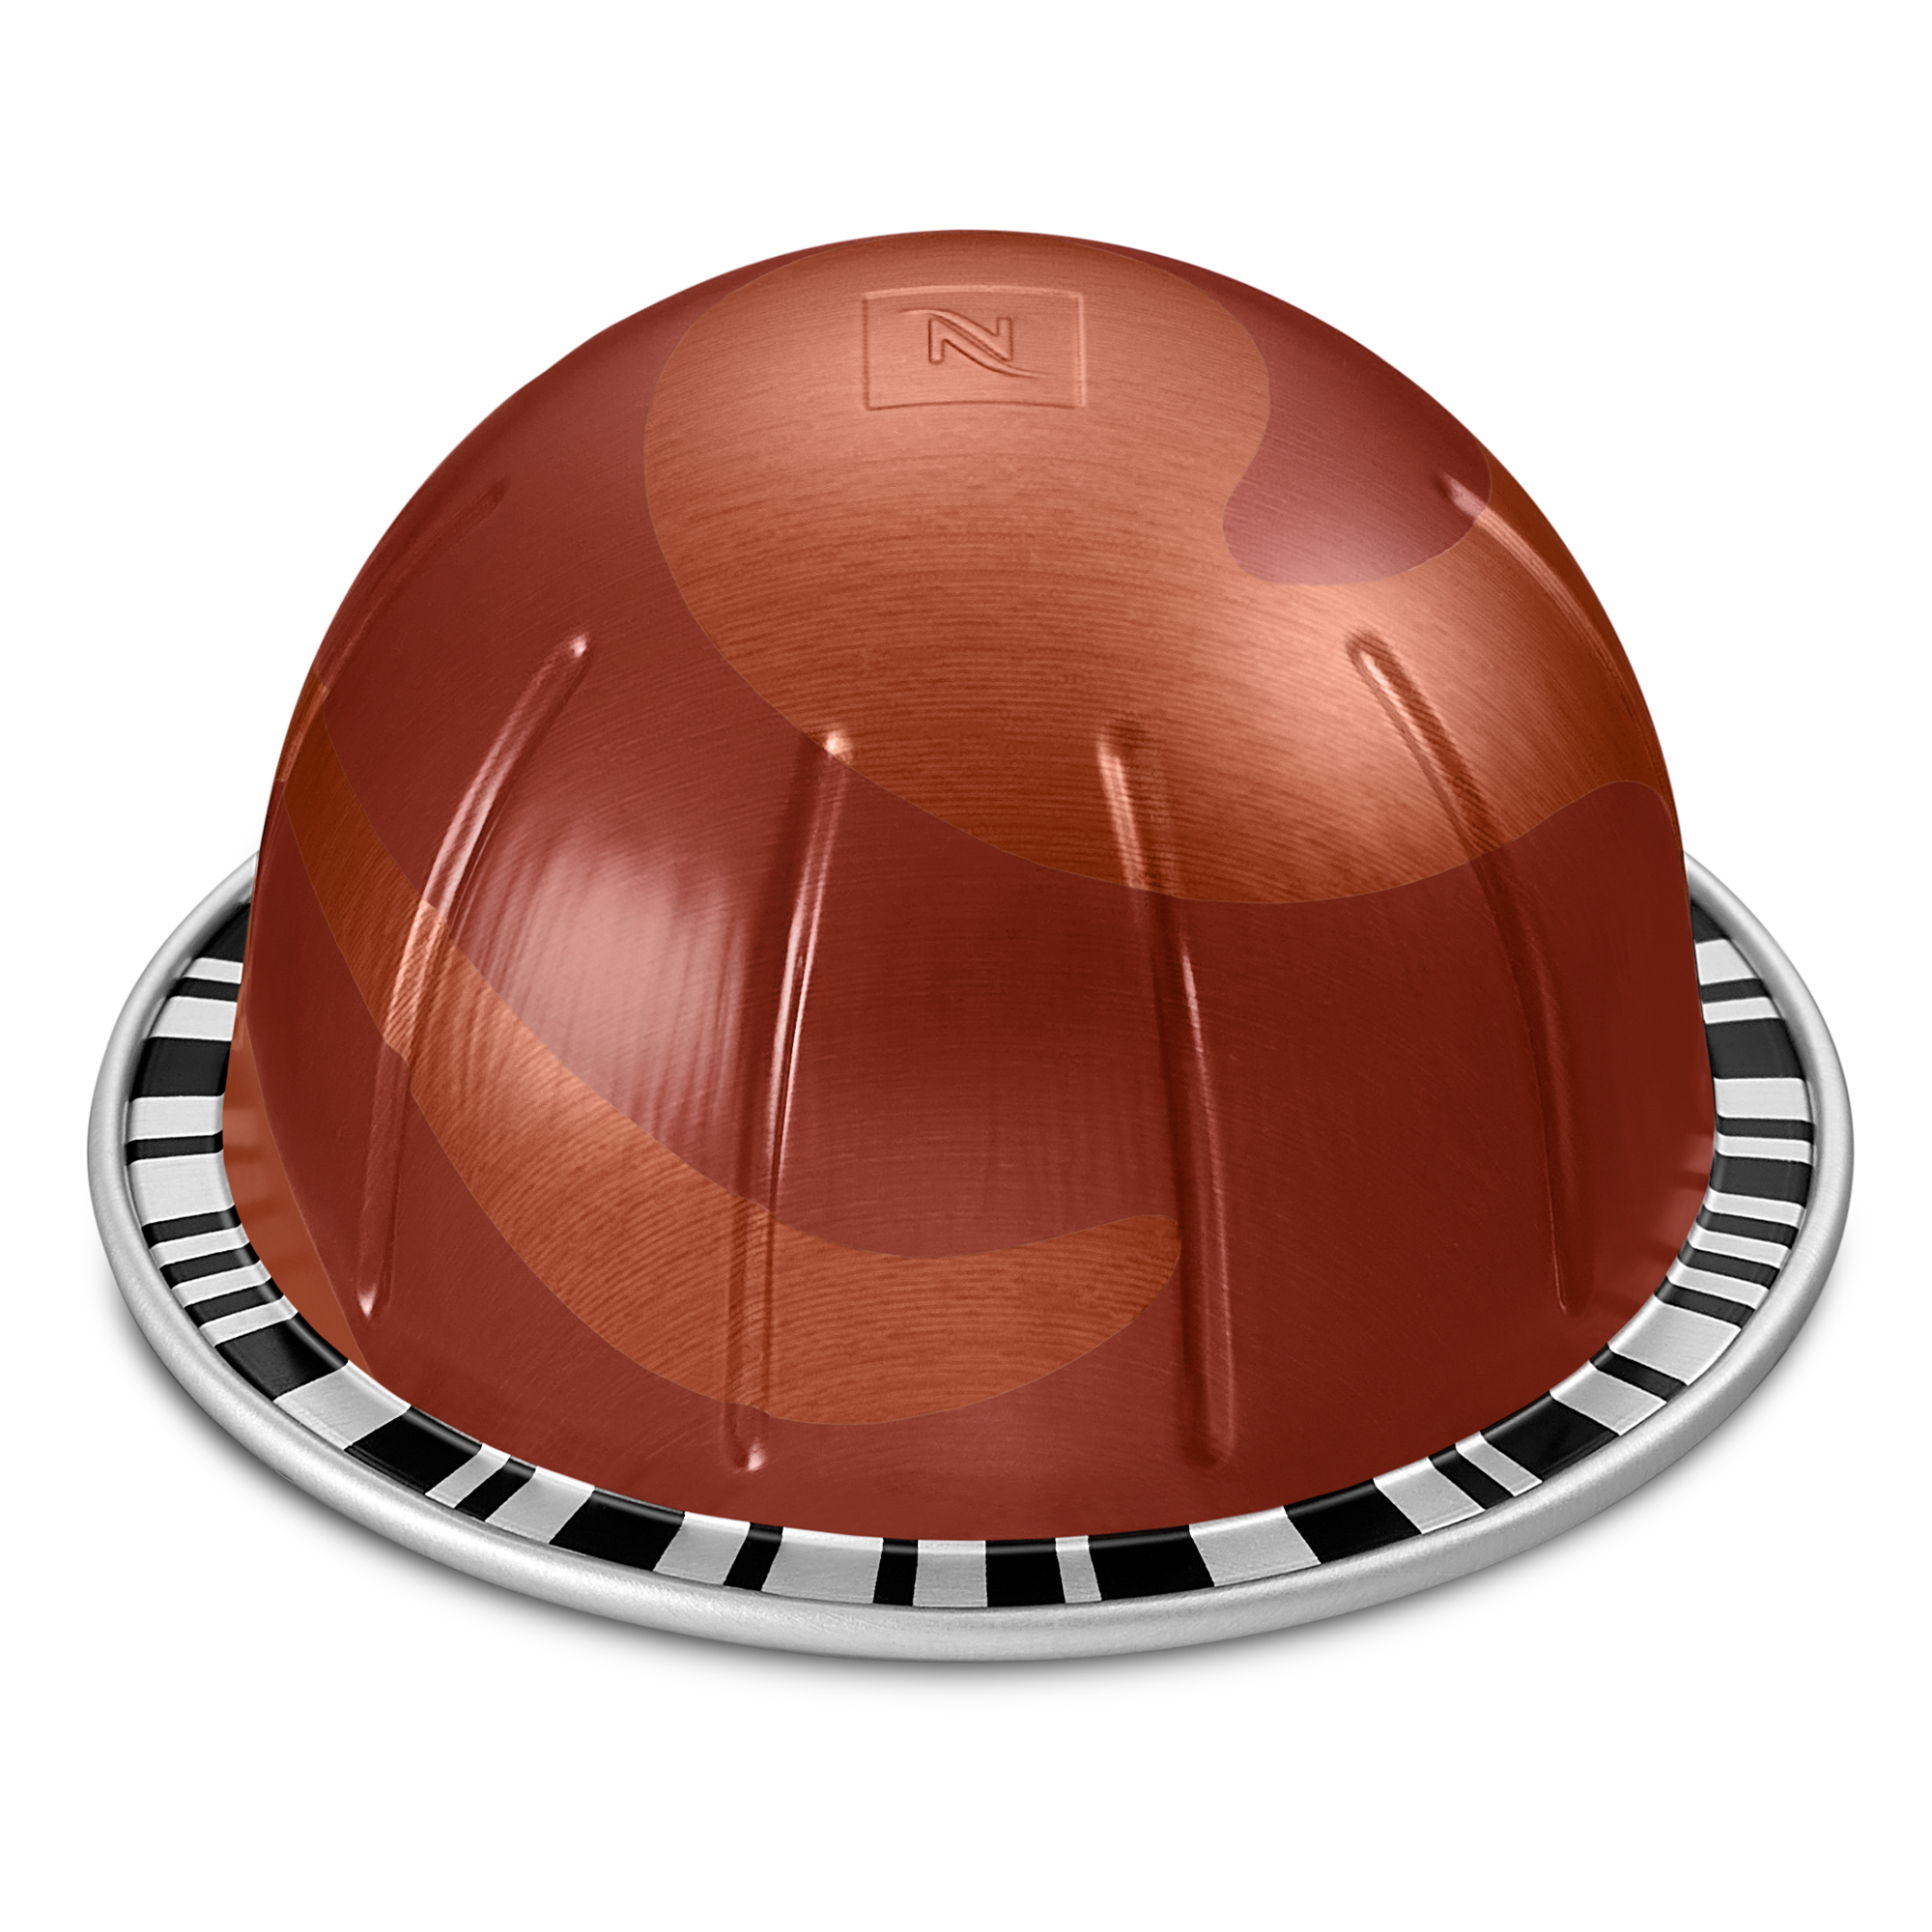 Roasted Hazelnut - 1 sleeve of 10 pods